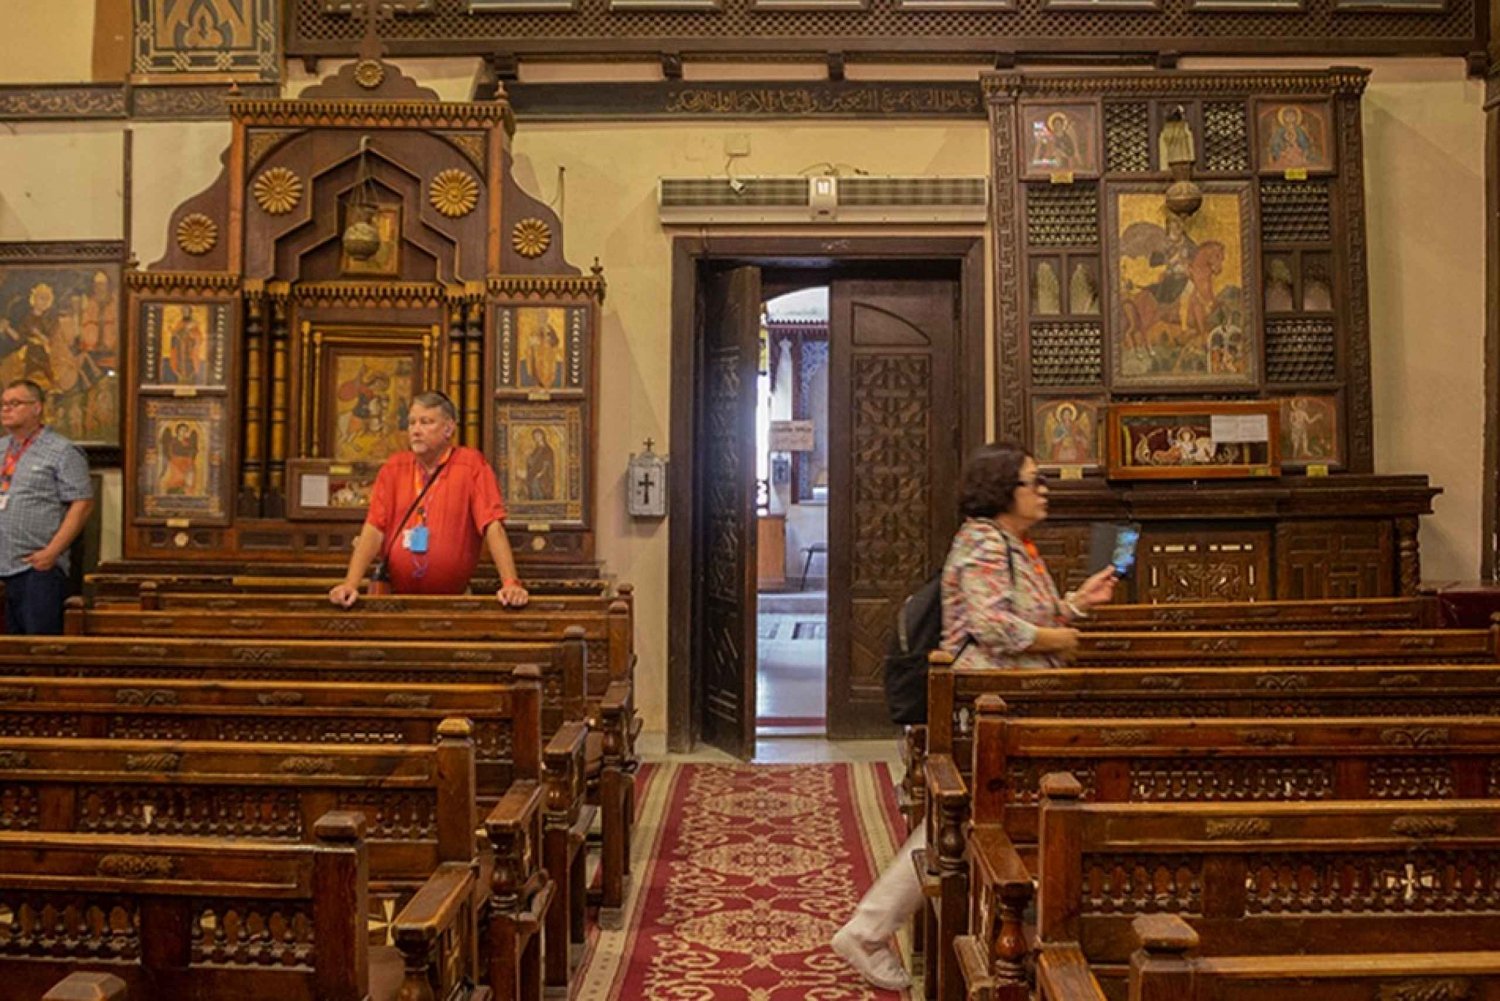 Egipt: Islamski i koptyjski Kair - całodniowa wycieczka z przewodnikiem